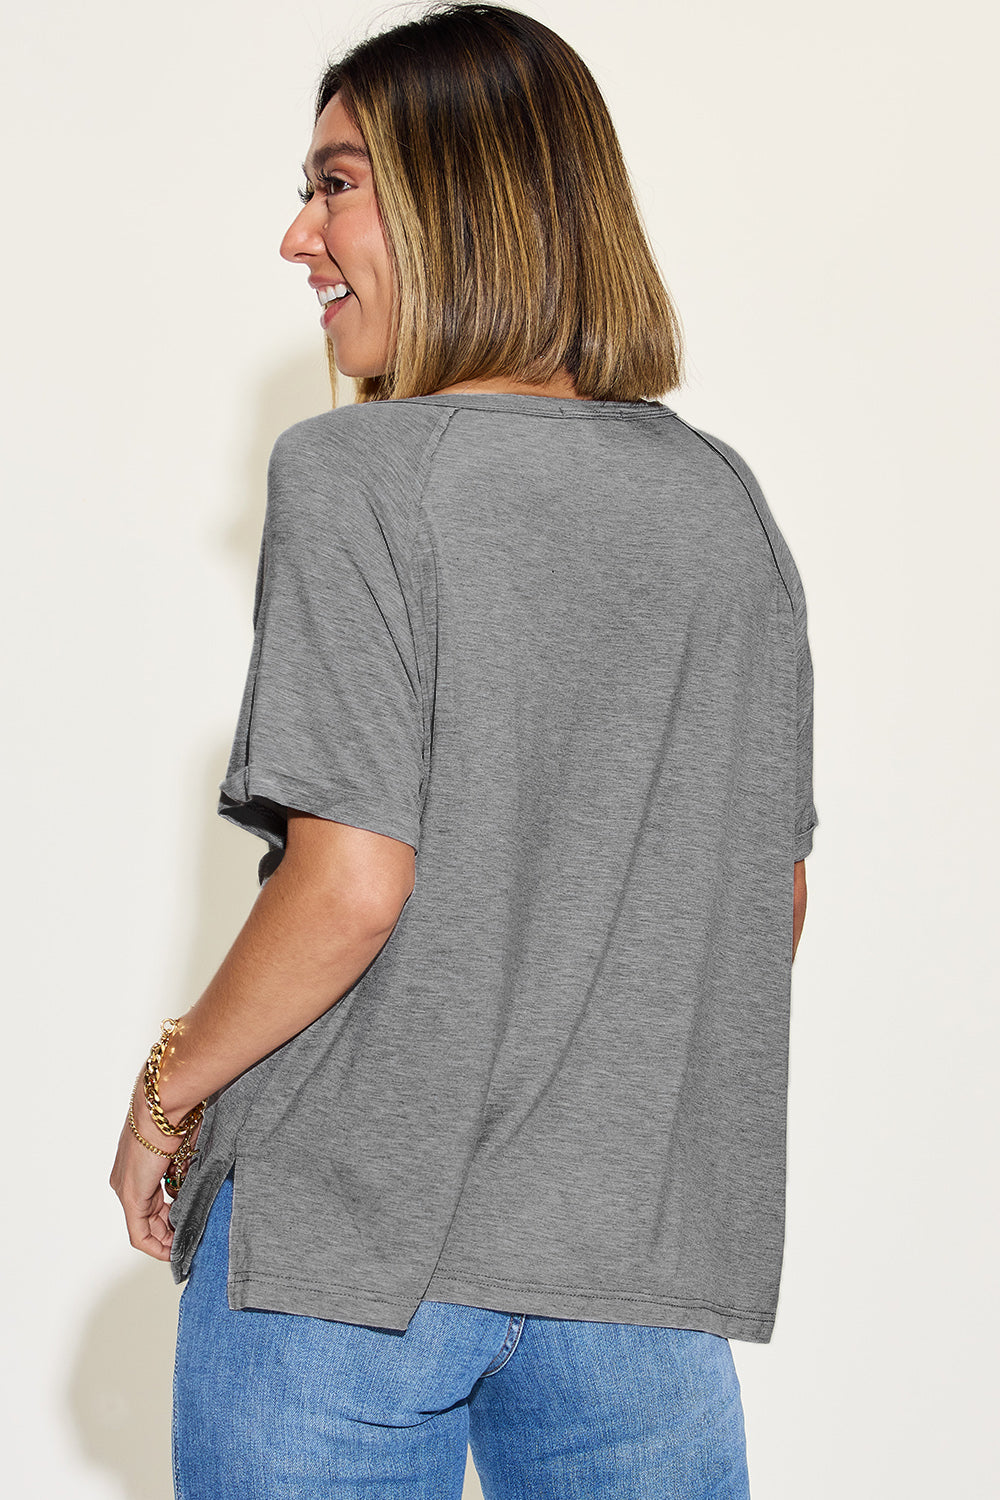 Basic Bae Full Size Bamboo Slit V-Neck Short Sleeve T-Shirt - 4 Colors